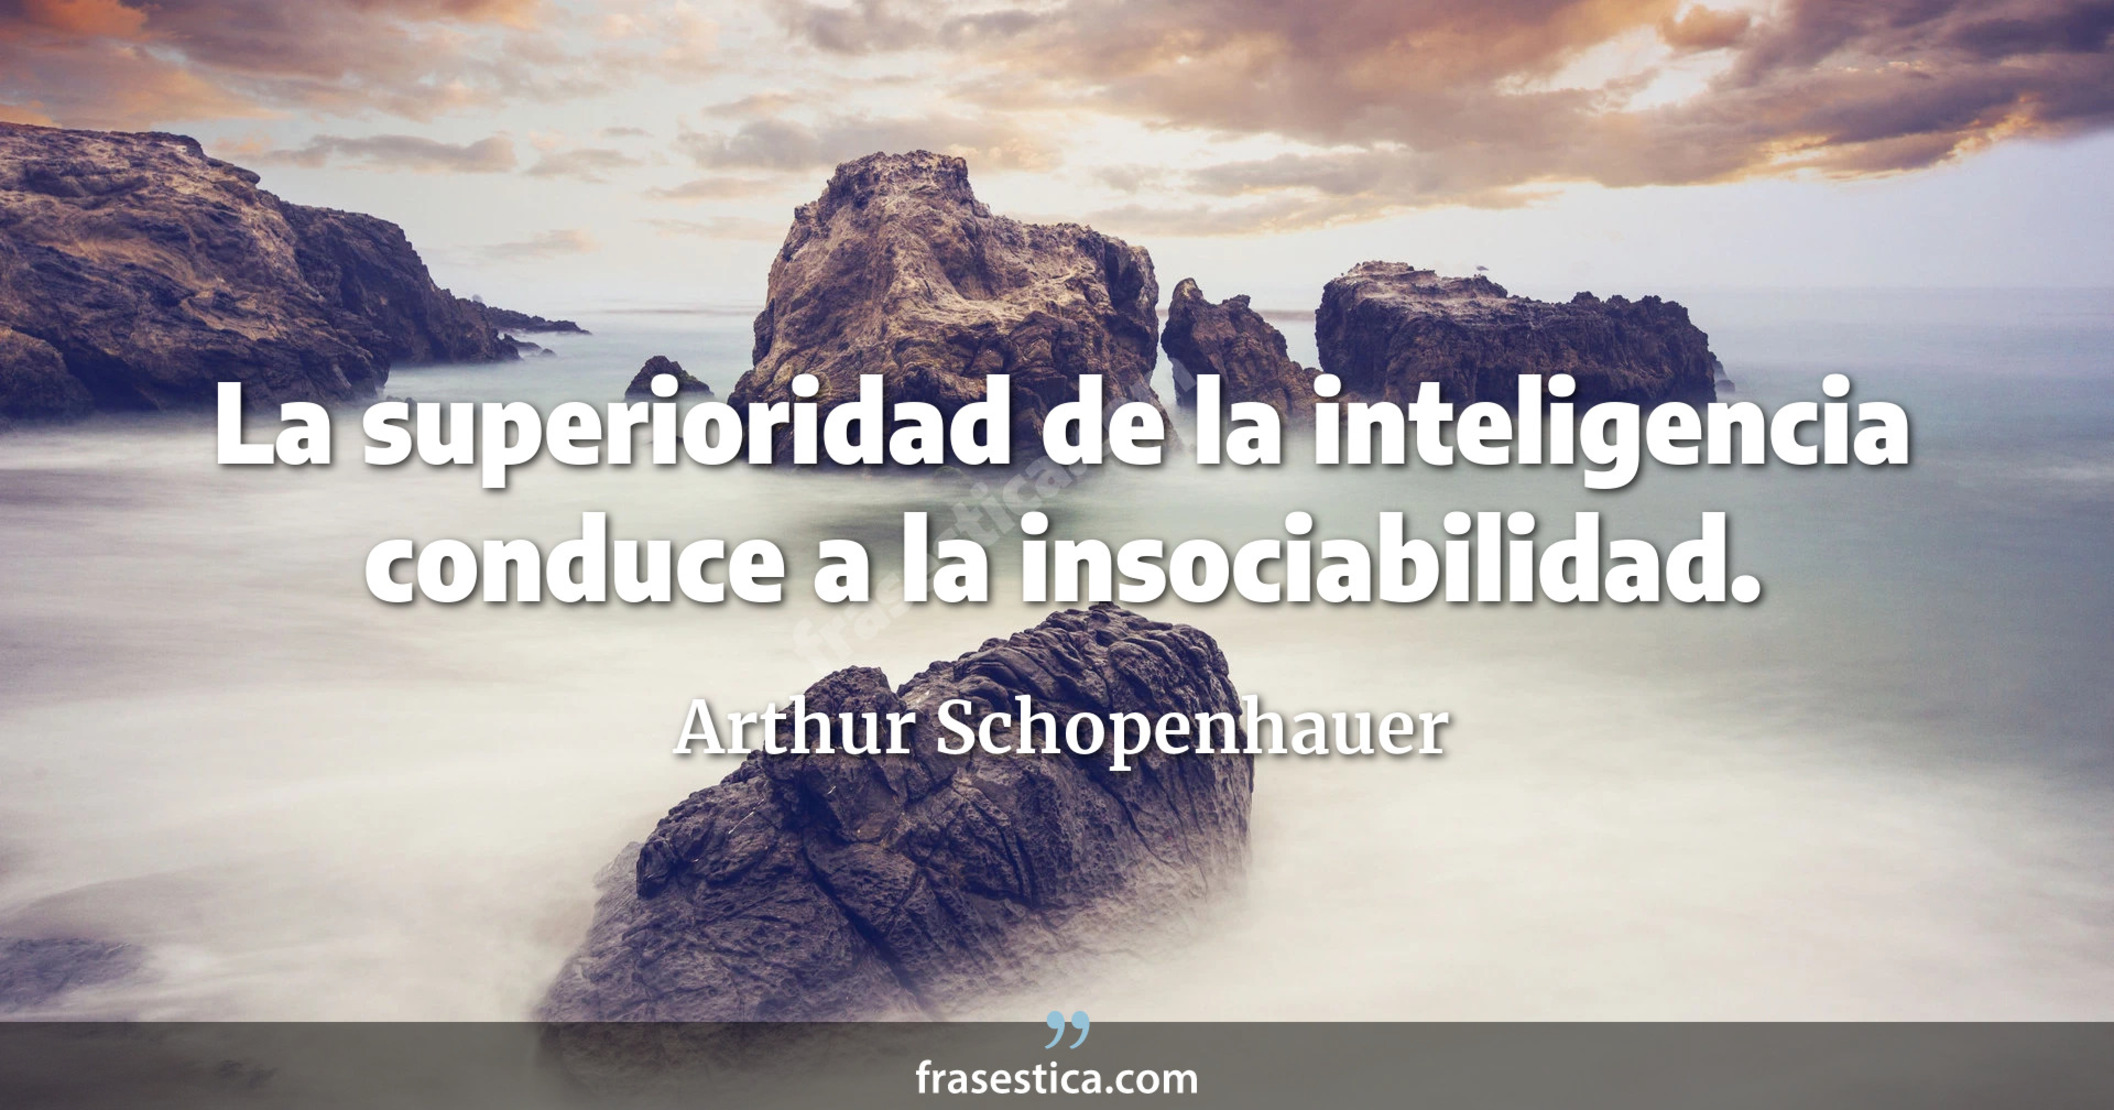 La superioridad de la inteligencia conduce a la insociabilidad. - Arthur Schopenhauer